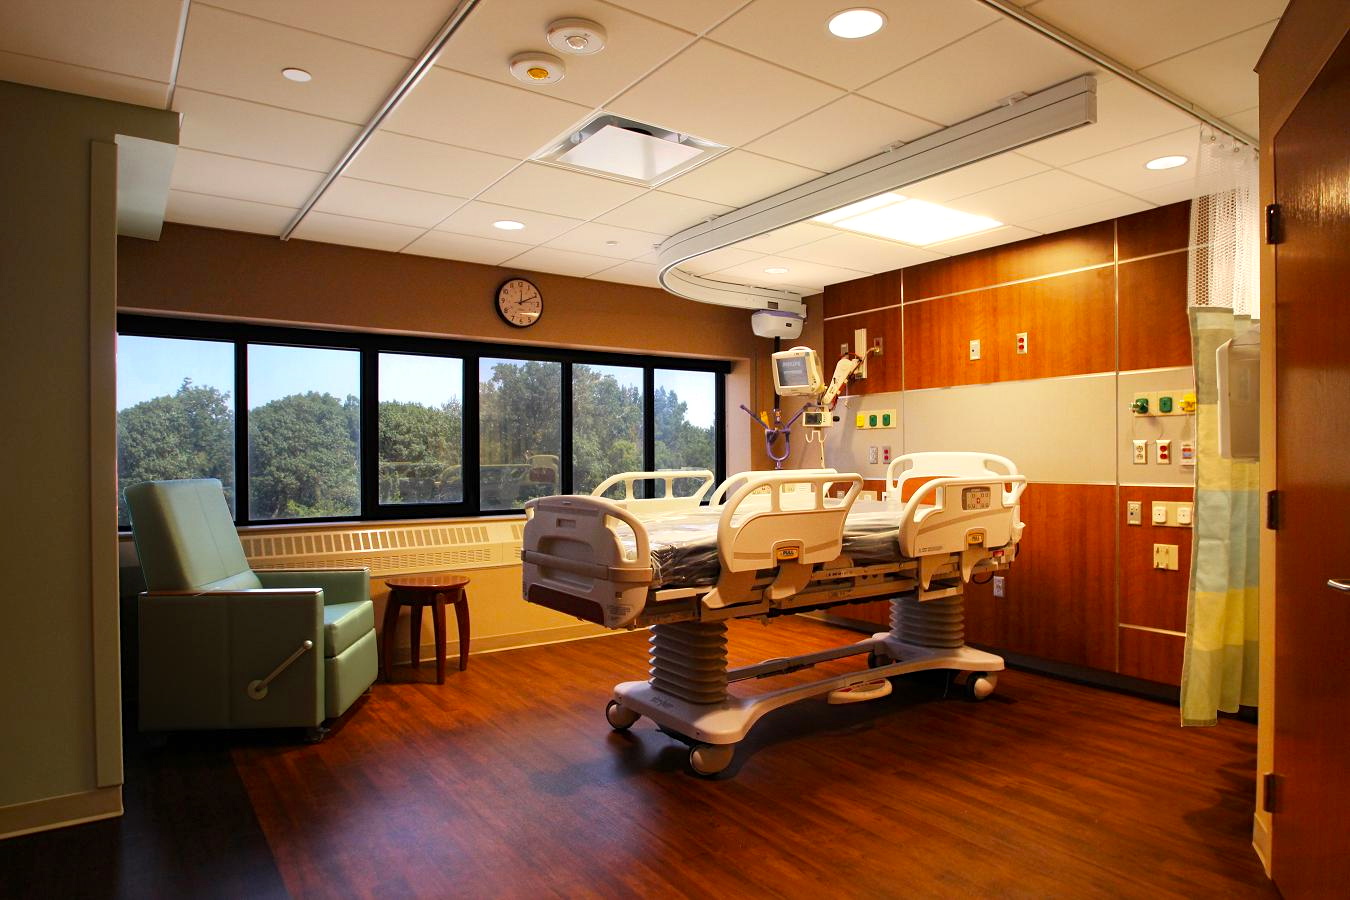 UTMC 3rd Floor ICU Patient Room